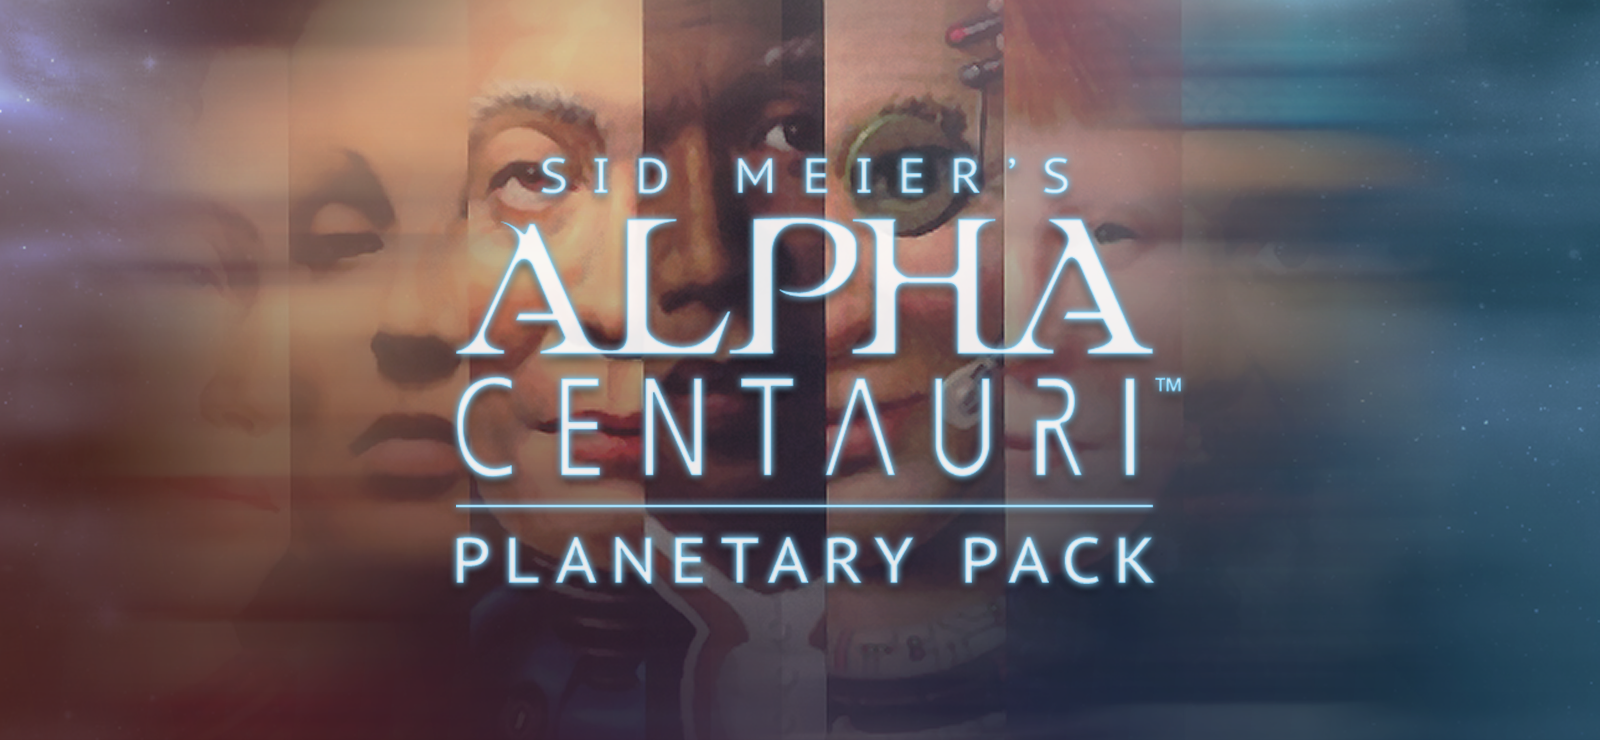 BESTSELLER - Sid Meier's Alpha Centauri™ Planetary Pack